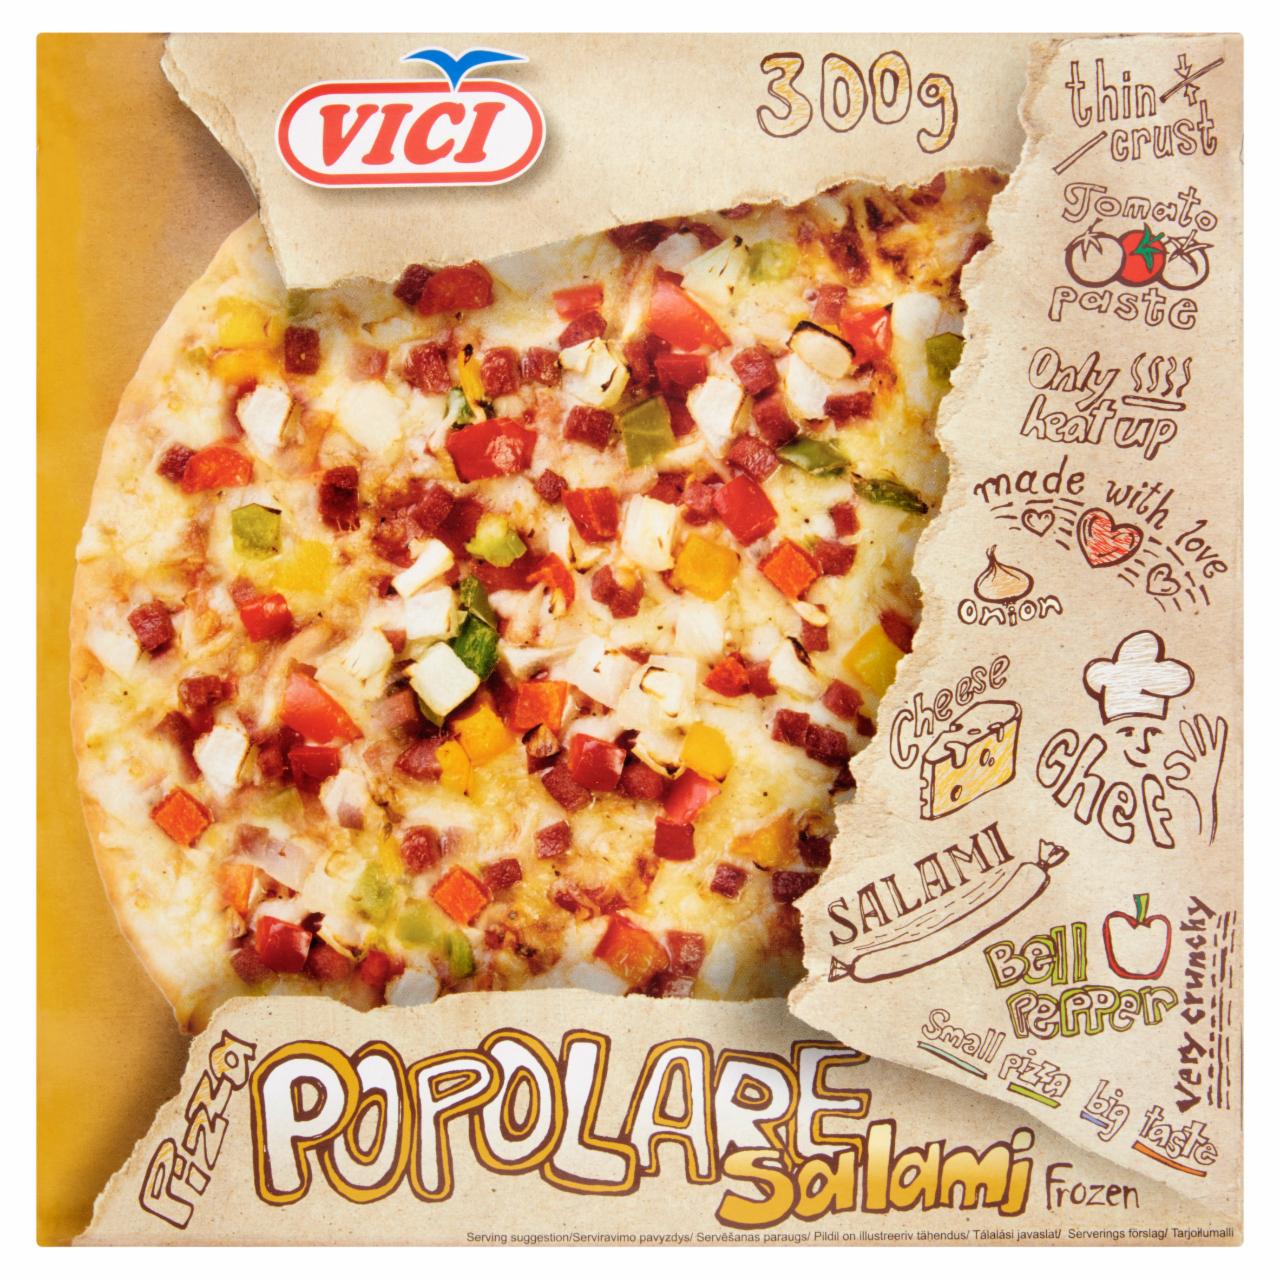 Képek - Vici Pizza Popolare gyorsfagyasztott szalámis pizza 300 g